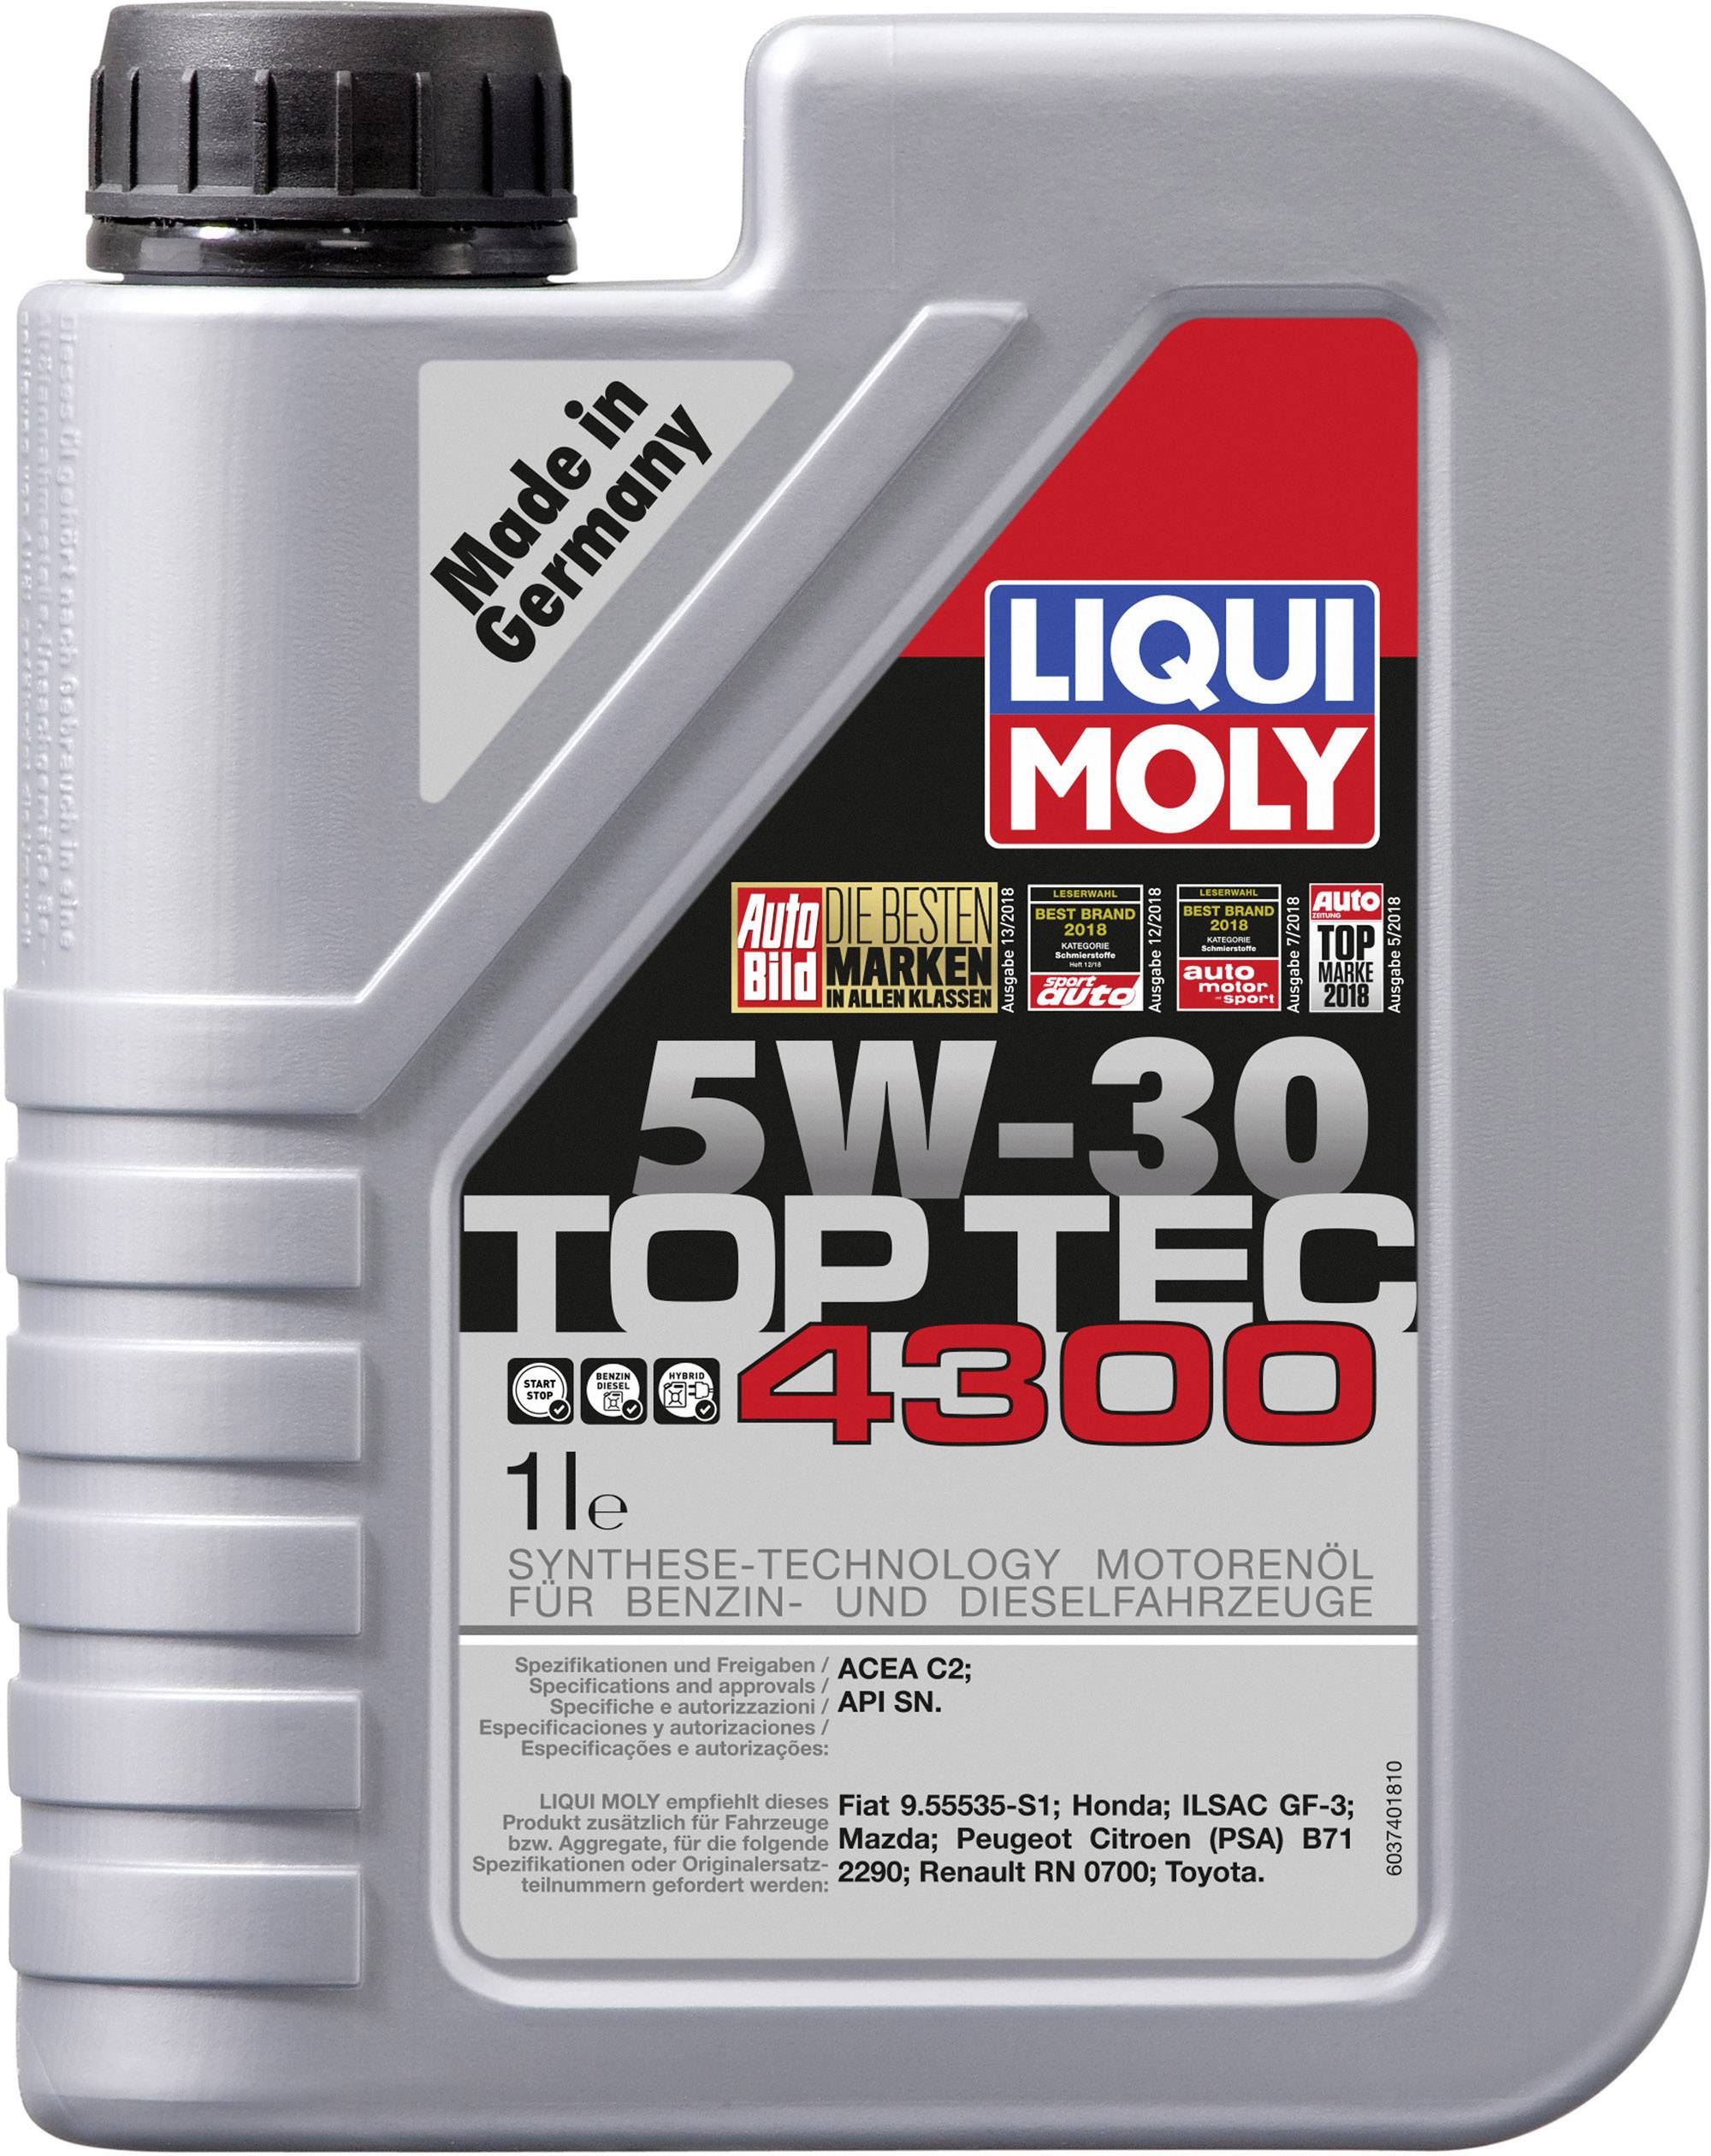 Buy Liqui Moly Top Tec 4300 5W-30 3740 Engine oil 1 l